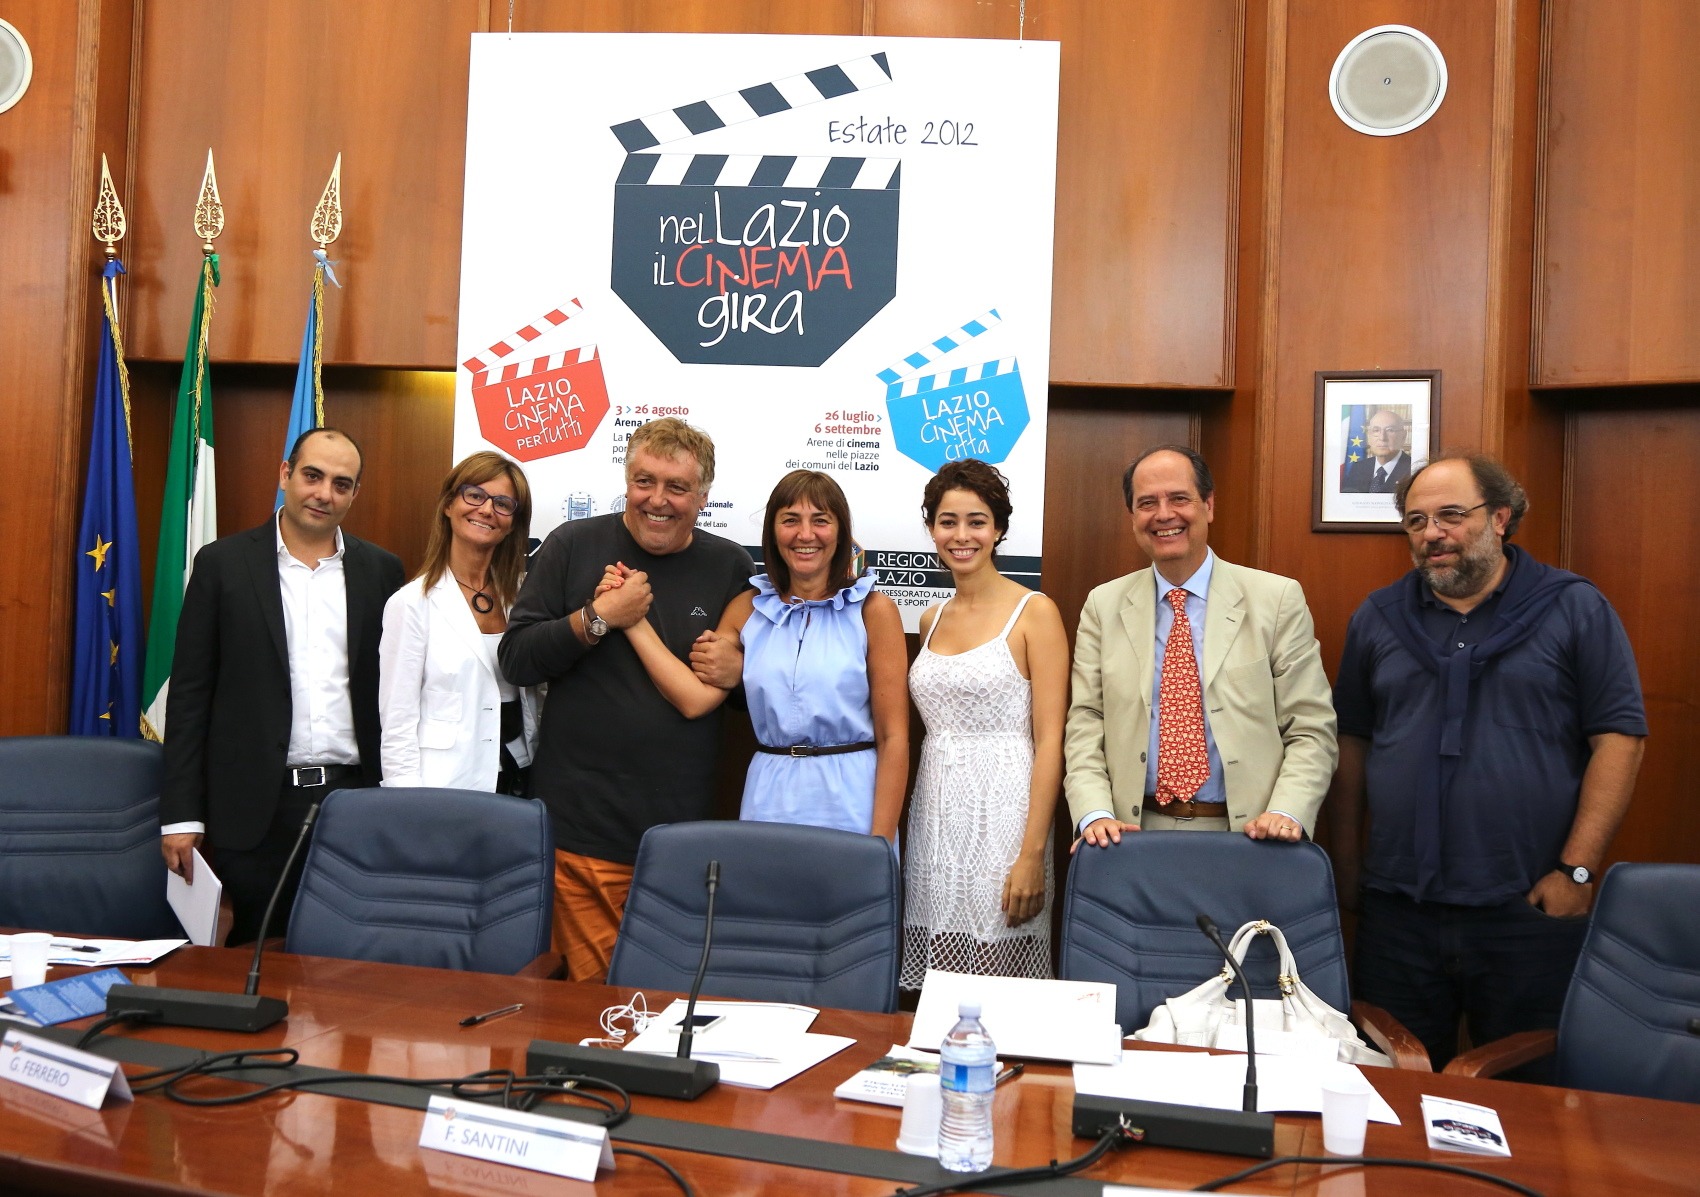 “Nel Lazio il cinema gira”, estate 2012 con “Lazio cinema per tutti” e “Lazio Cinemacittà”